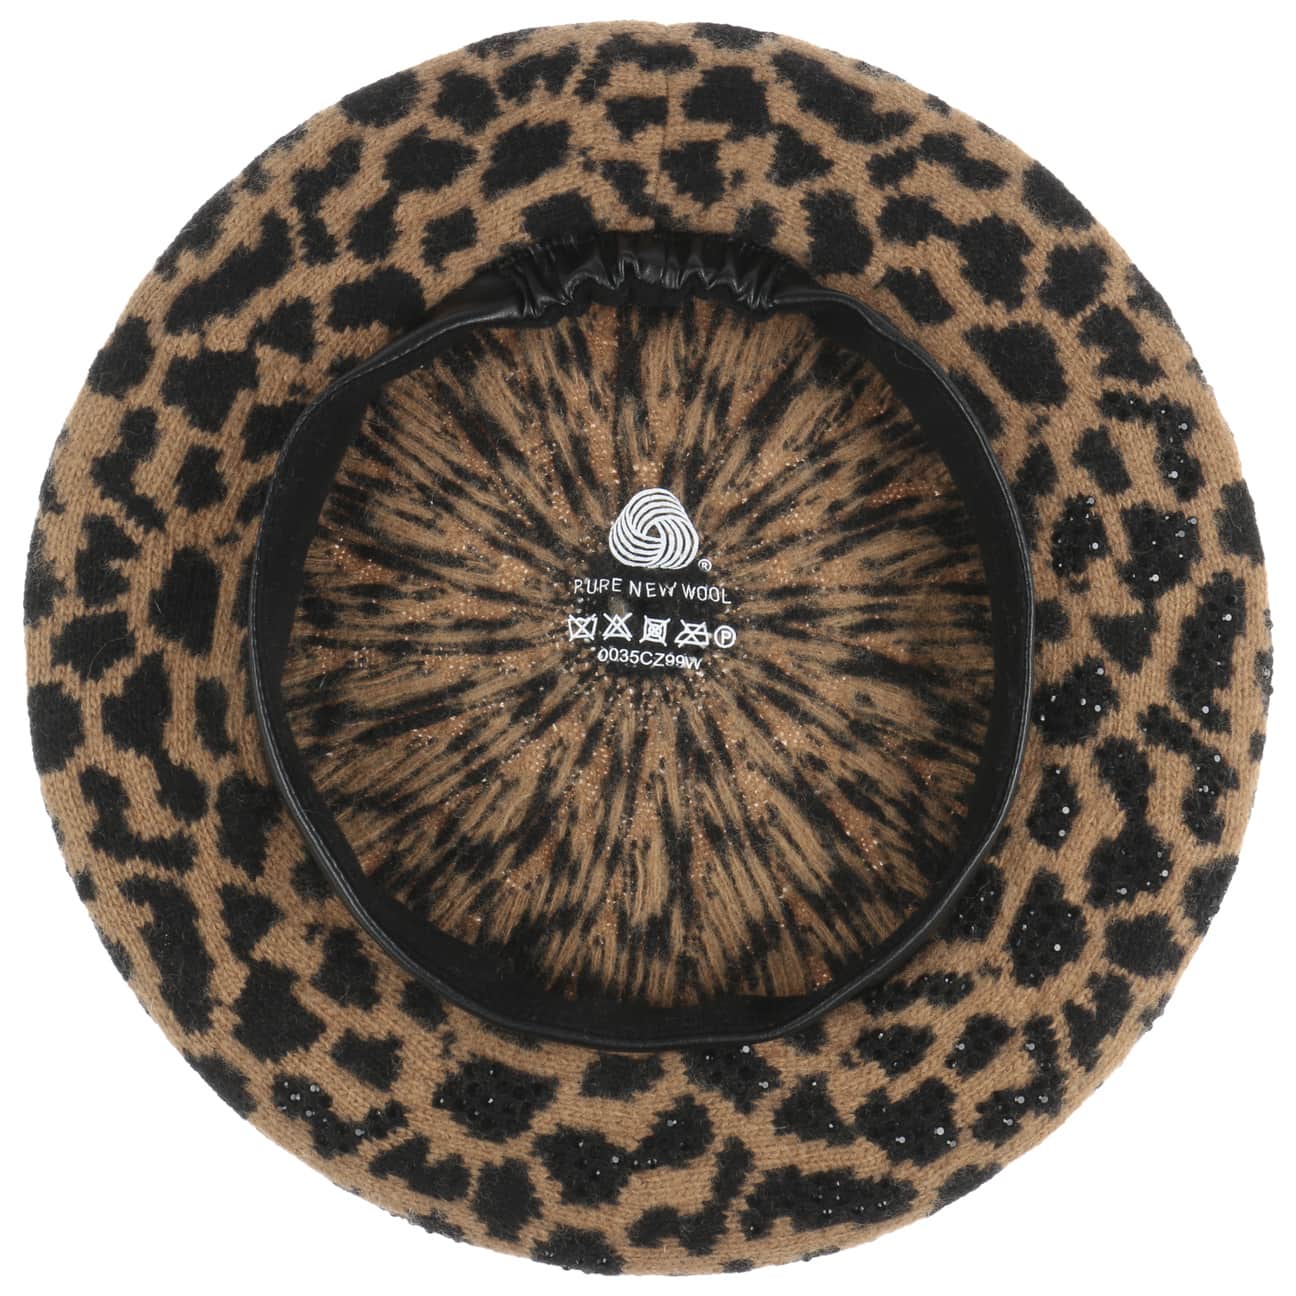 Beret Hat in Leopard Print Fleece – Boston Millinery